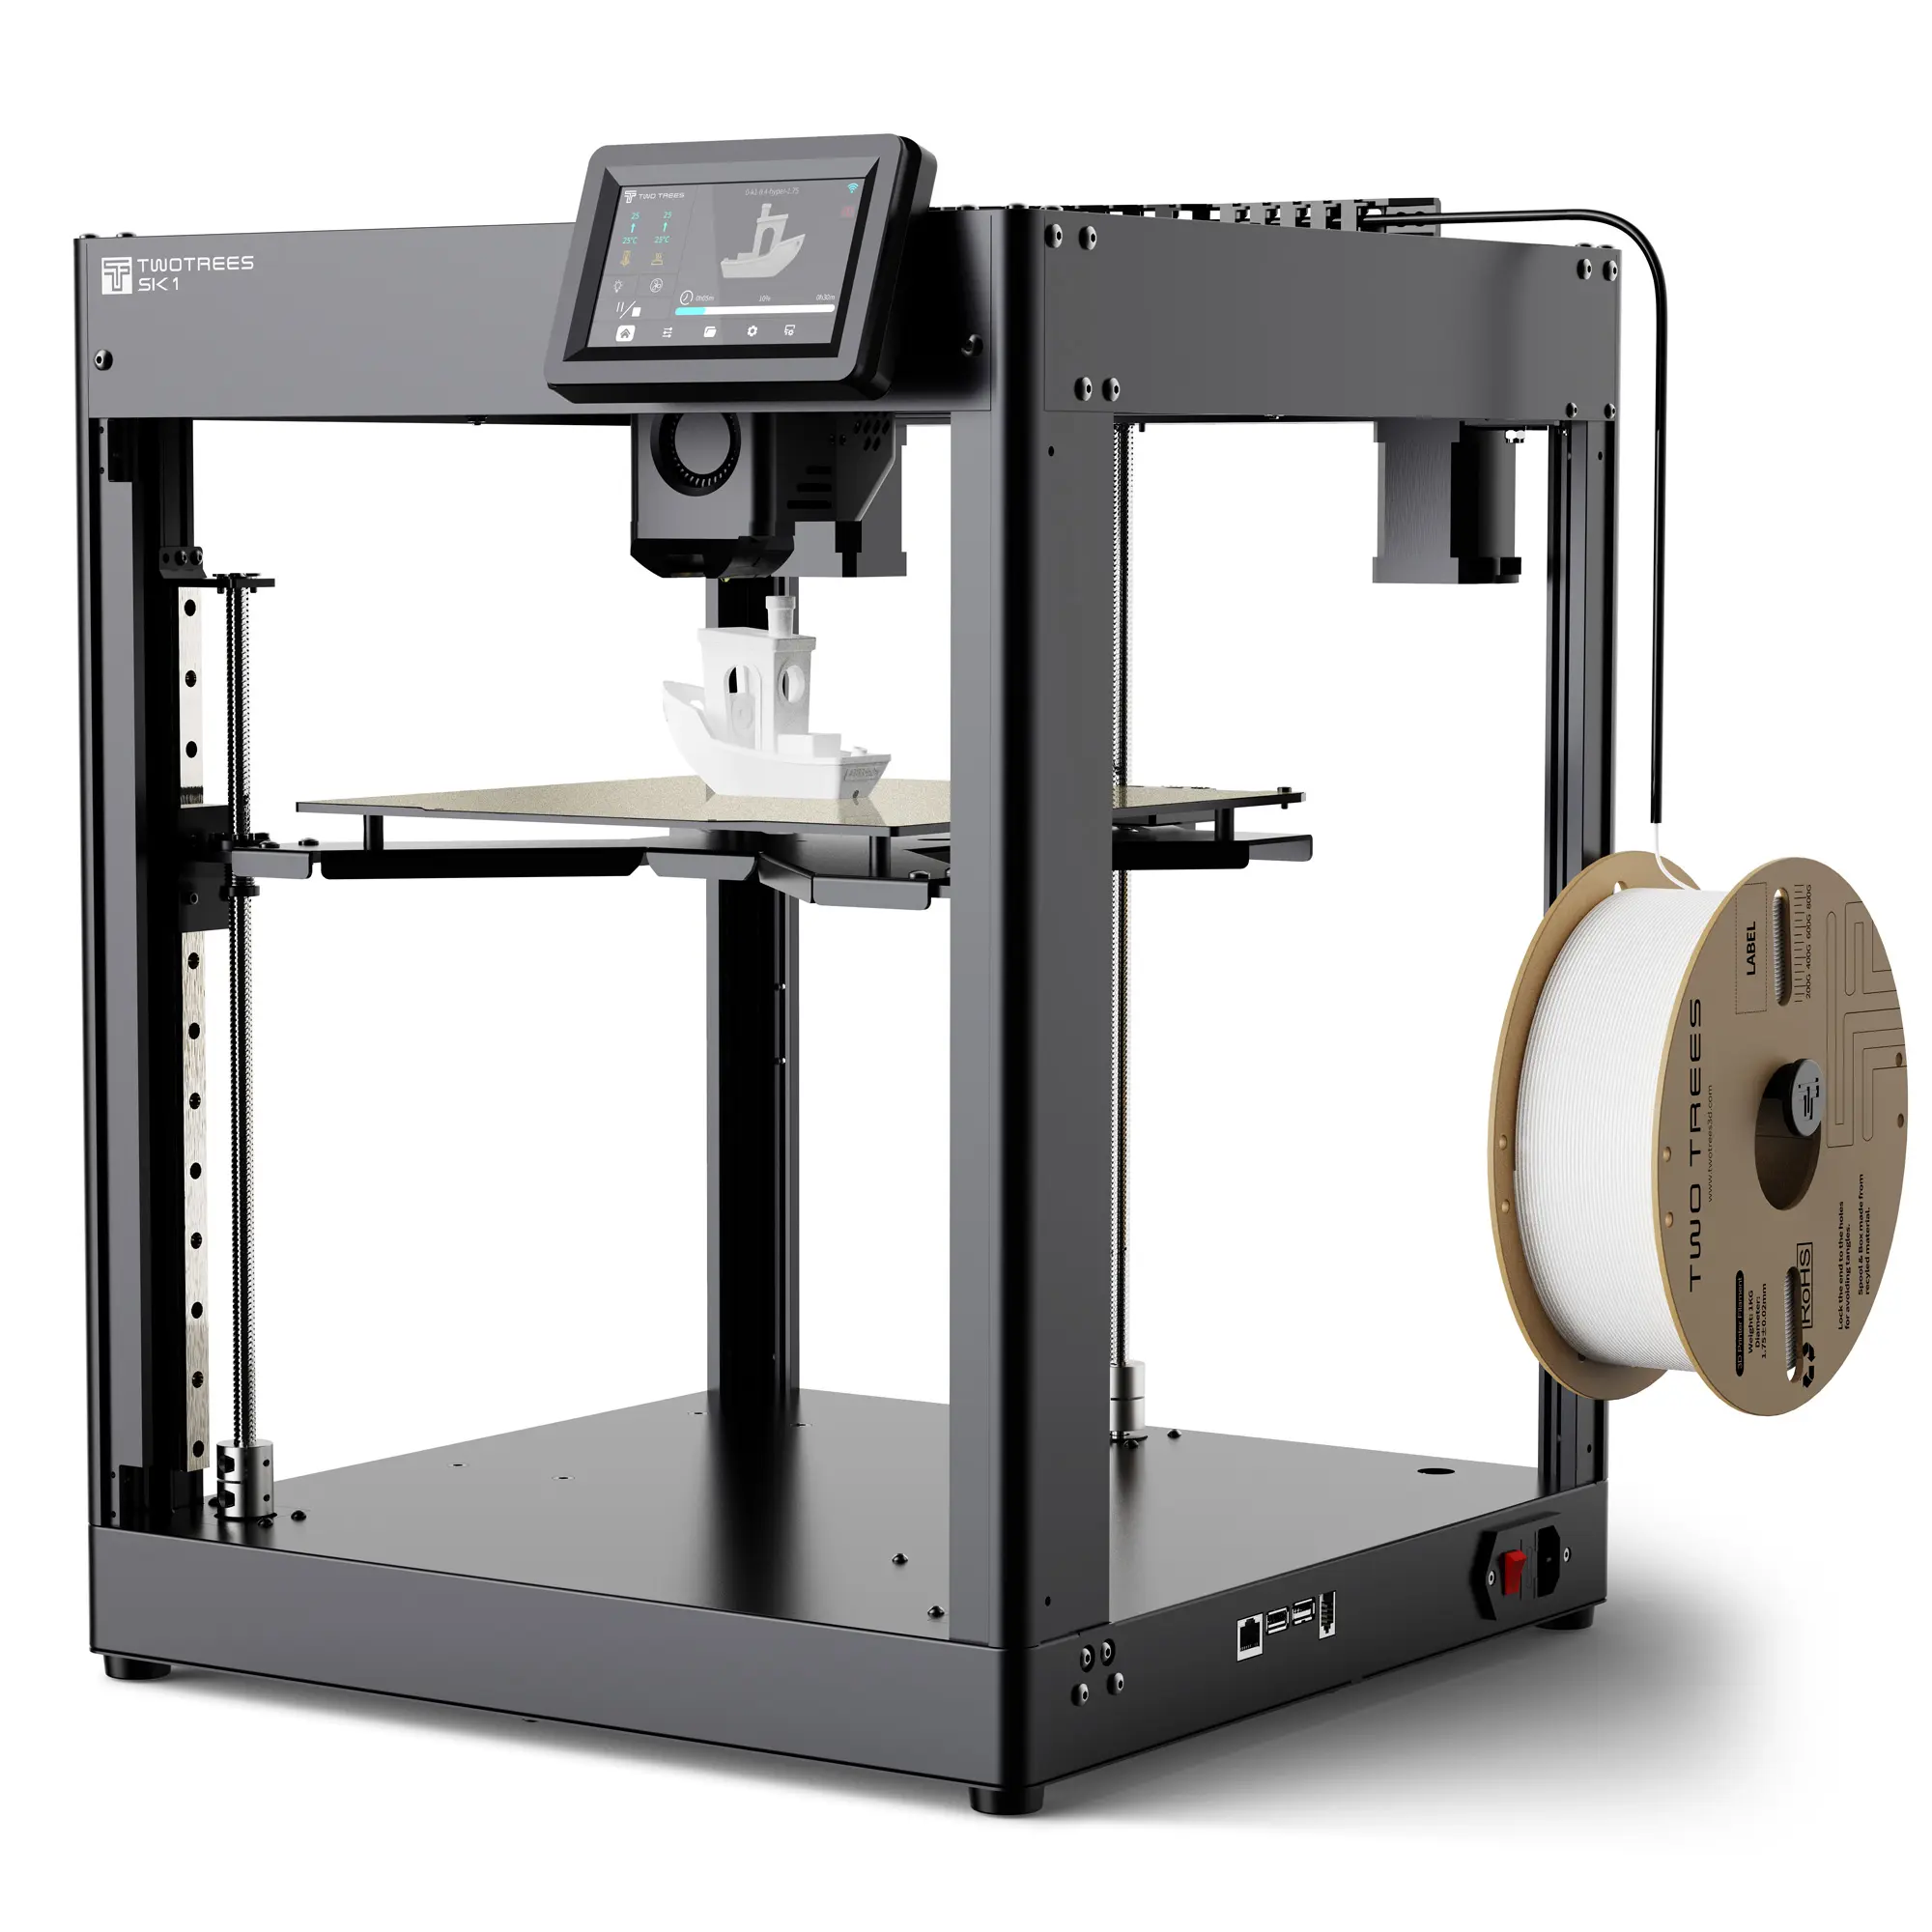 TWOTREES Kipper технология SK1 Core XY 3D принтер промышленного класса, специально разработанный для печати PLA PETG филаментный 3D принтер